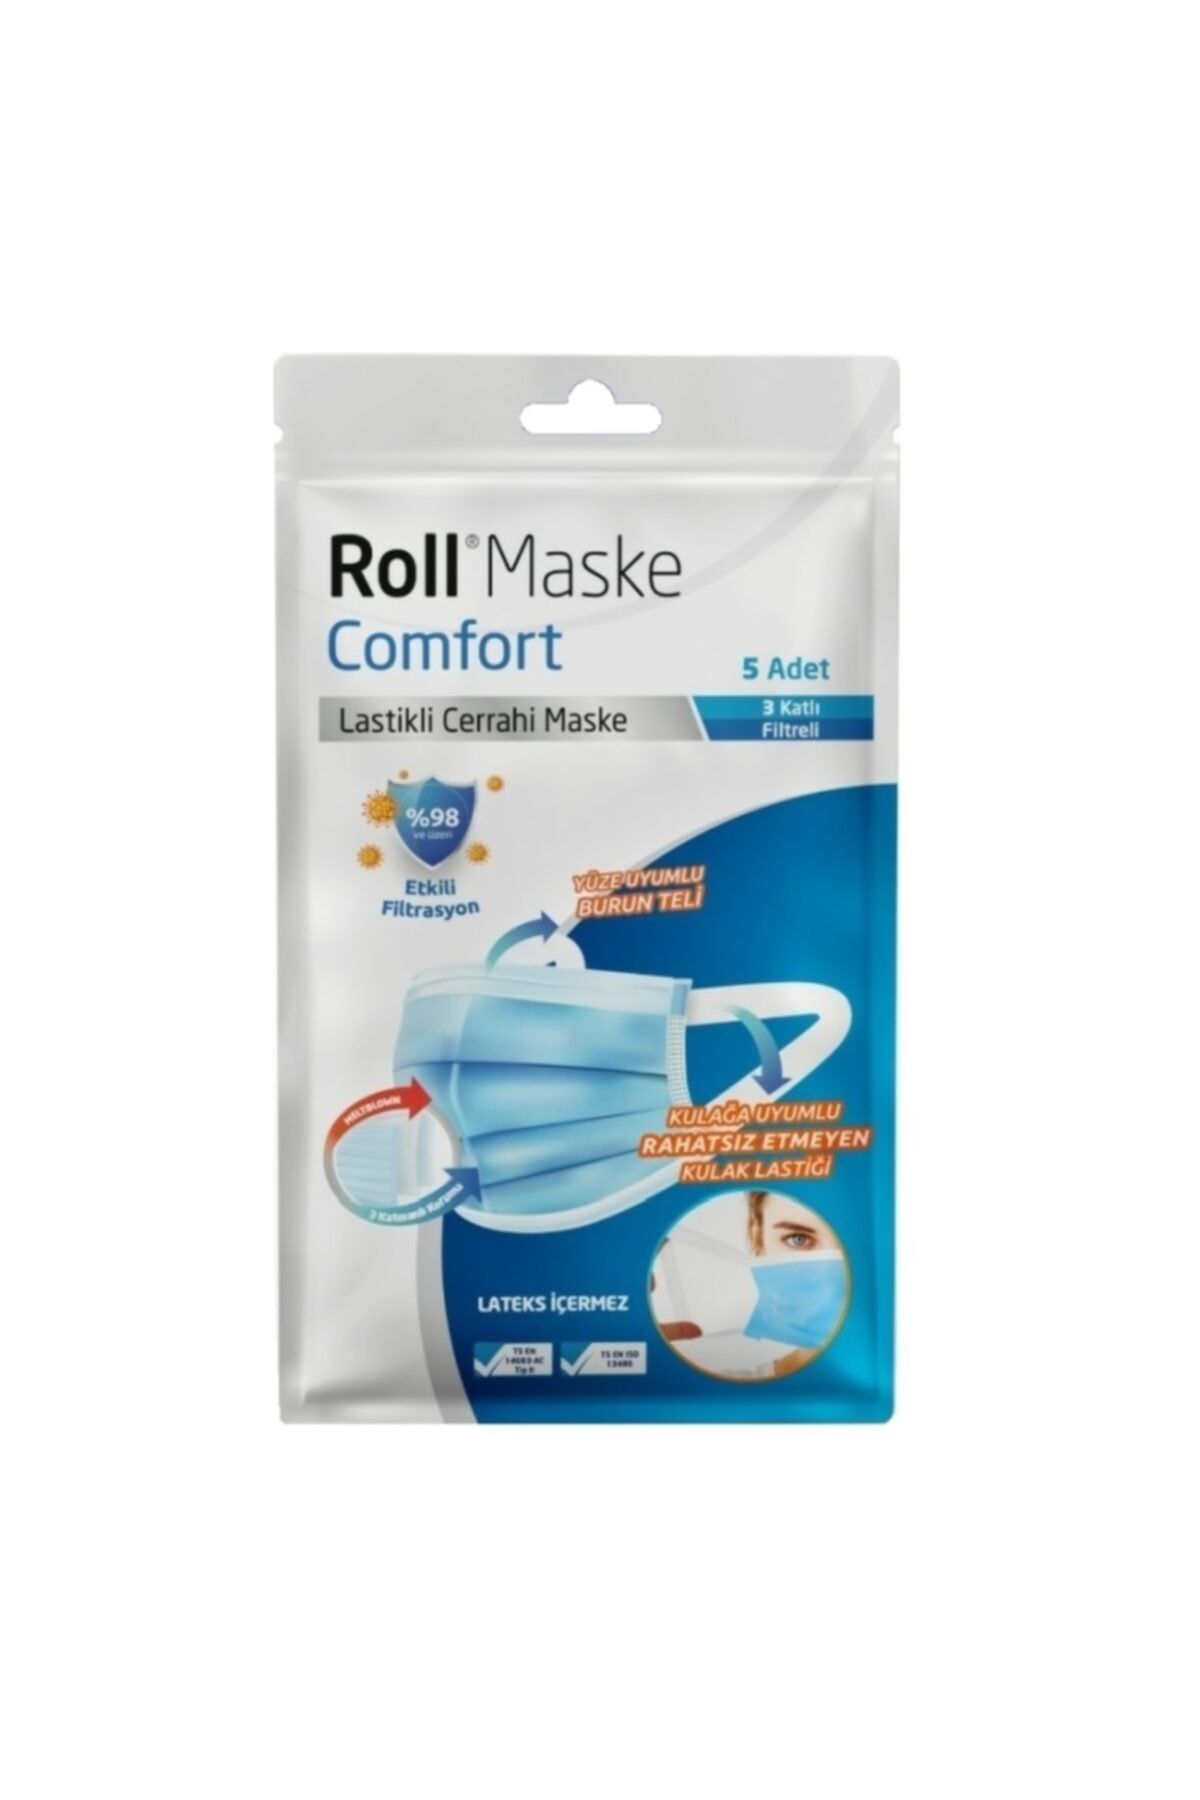 KURTSAN MEDİKAL Roll Maske Comfort Lastikli Cerrahi Maske - Meltblown Filtreli 50 Adet